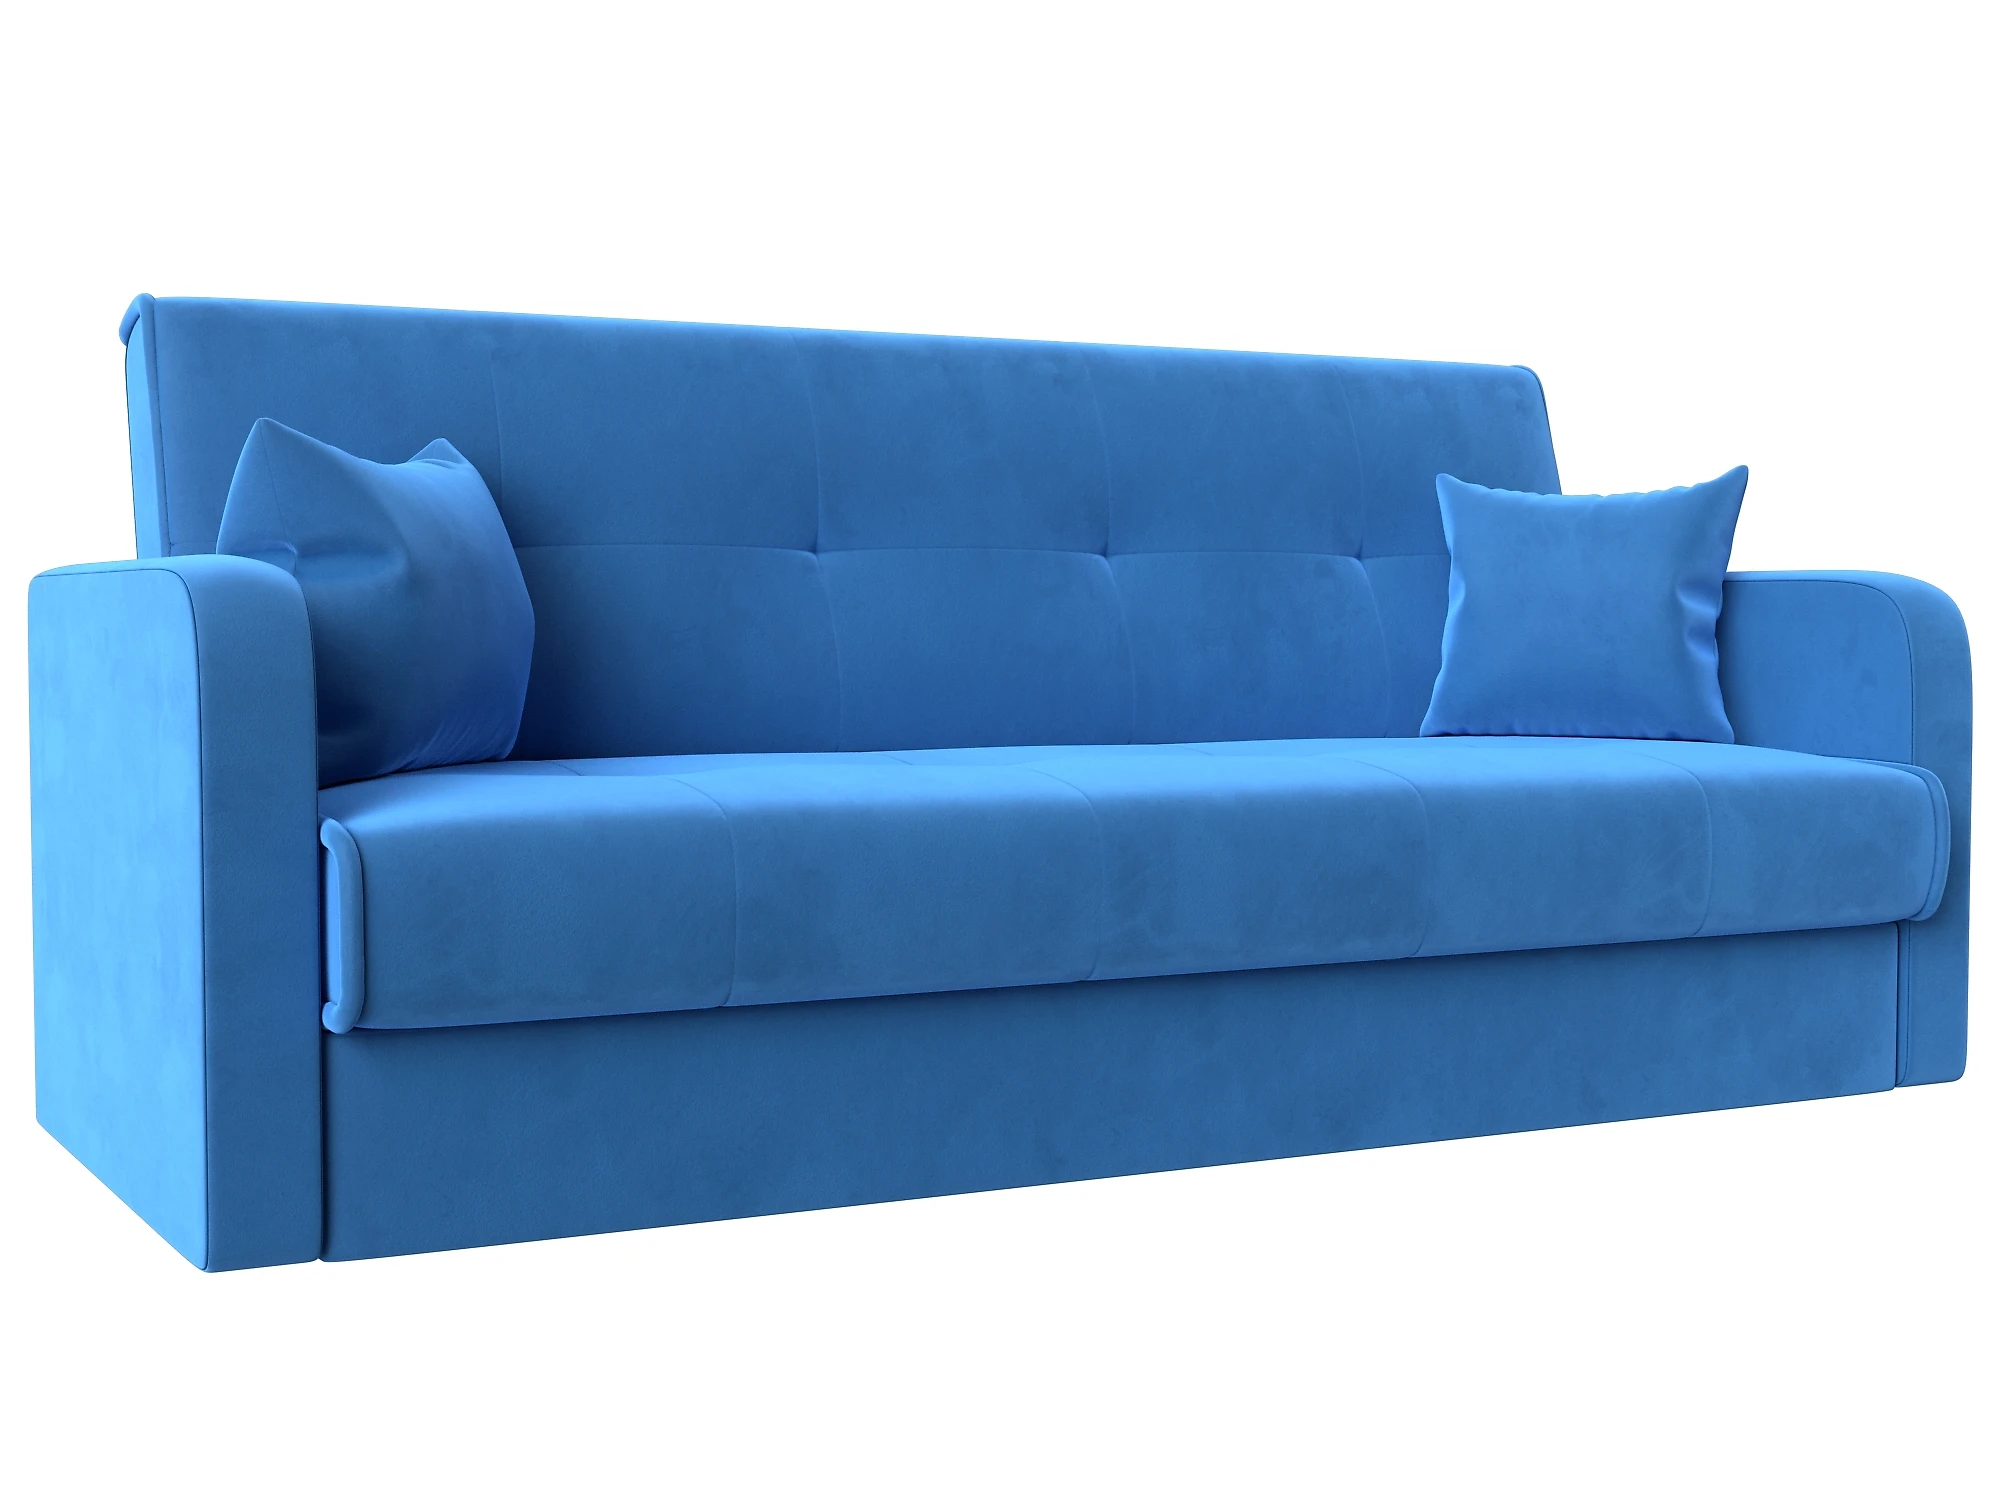  голубой диван  книжка Надежда Плюш Дизайн 3